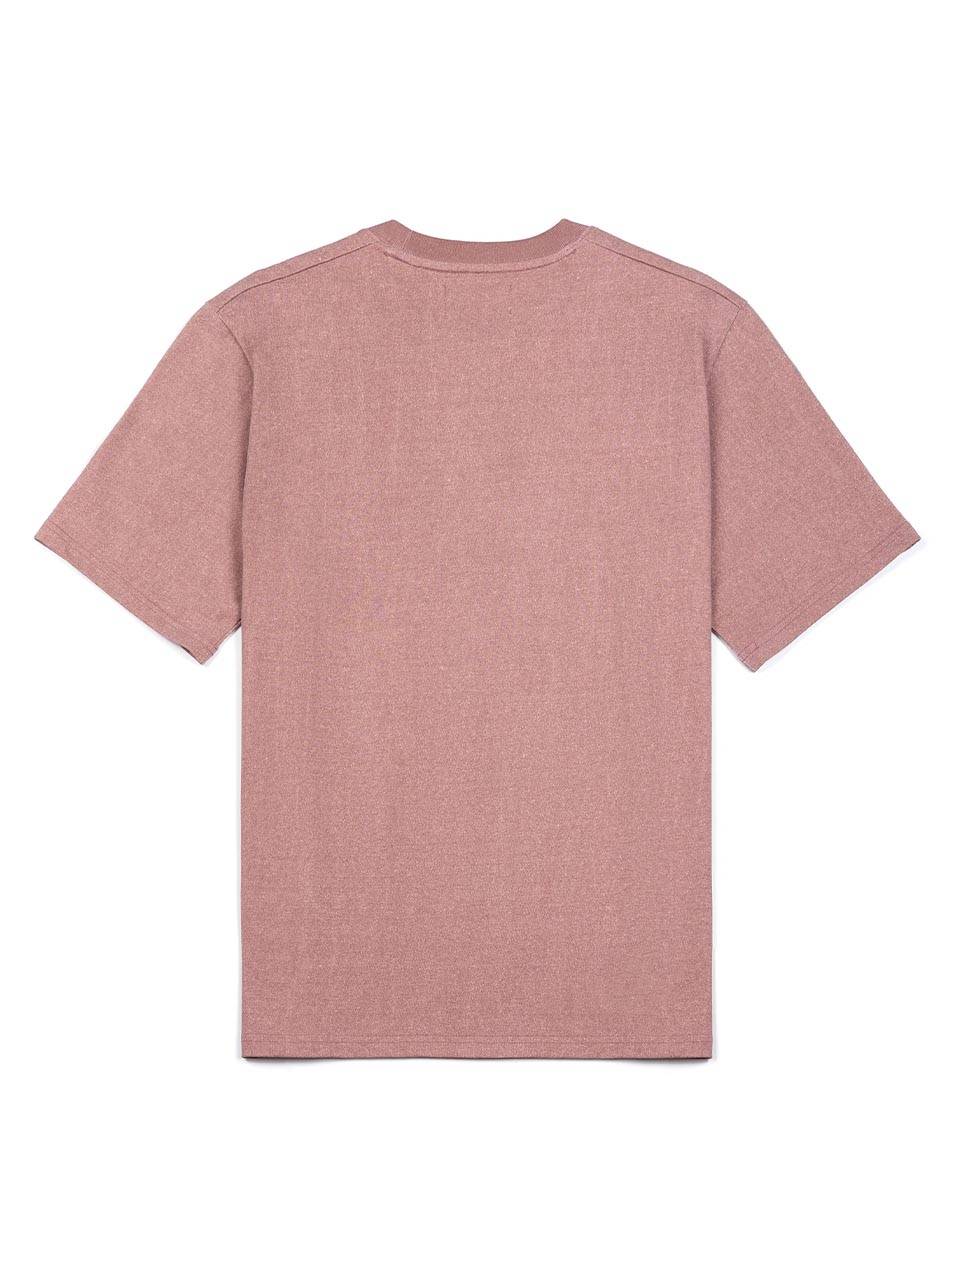 슬로우 타운 티셔츠 - 핑크 - IOEDLE 이외들 - CAVA LIFE